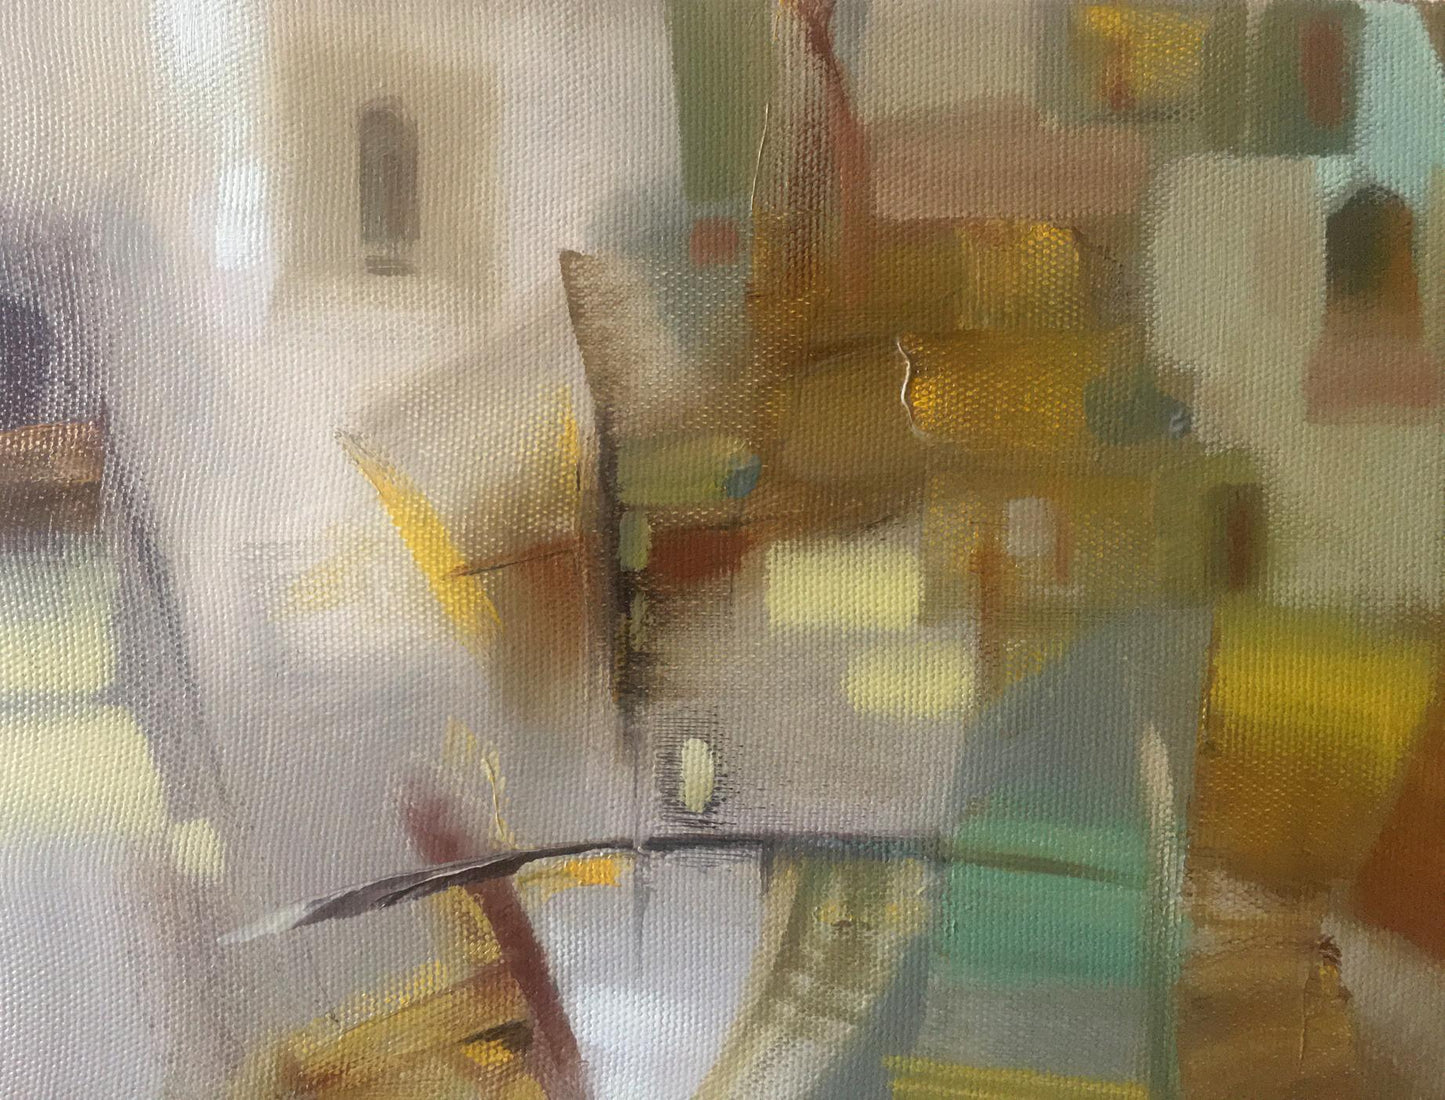 Abstract oil painting Boats Anatoly Borisovich Tarabanov